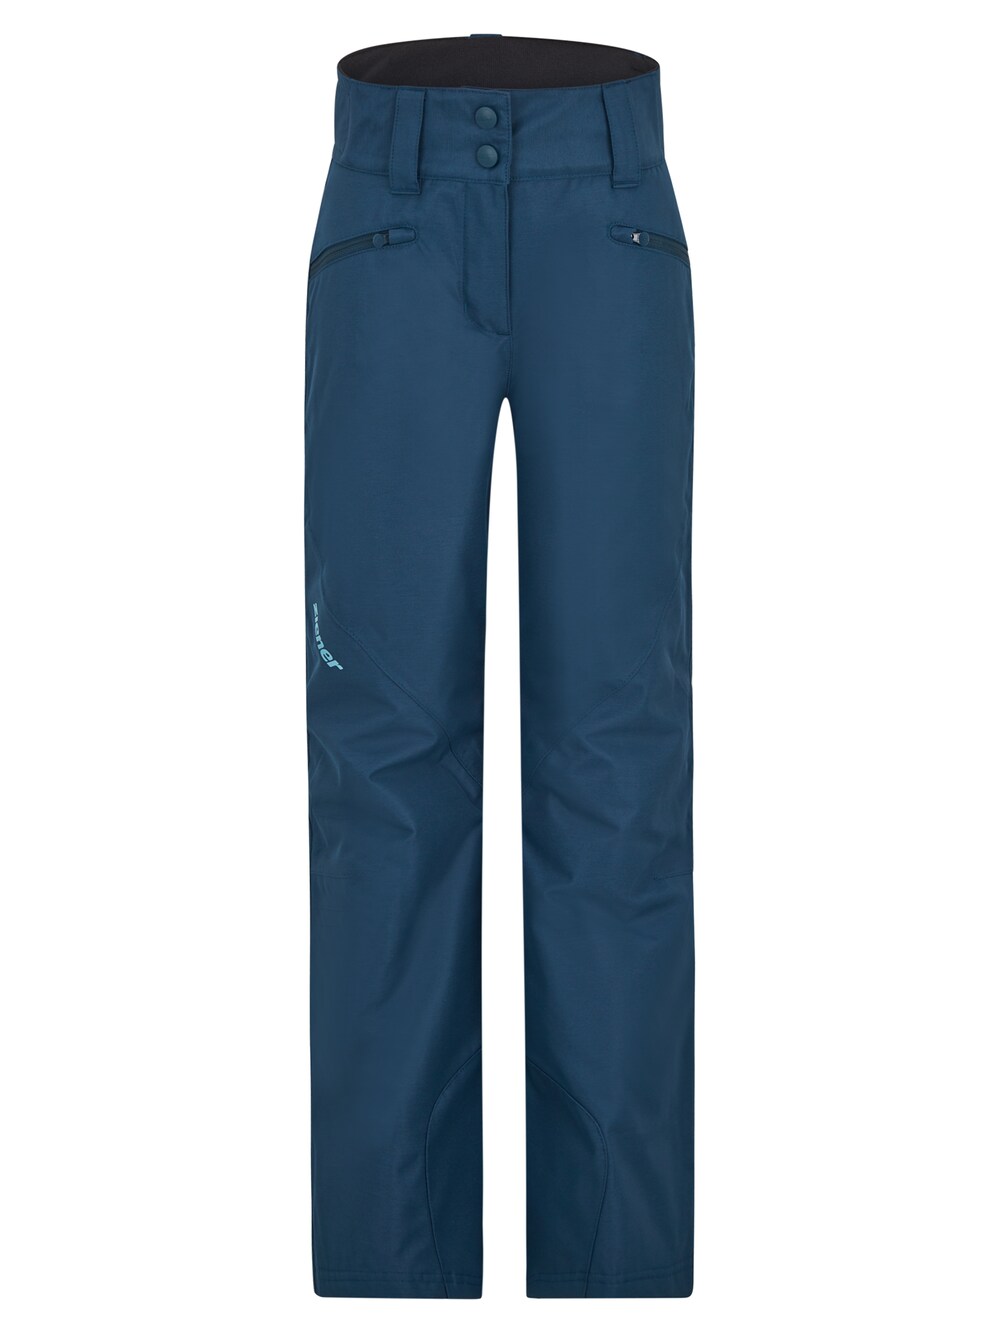 Обычные тренировочные брюки Ziener ALIN, темно-синий обычные тренировочные брюки cruz темно синий